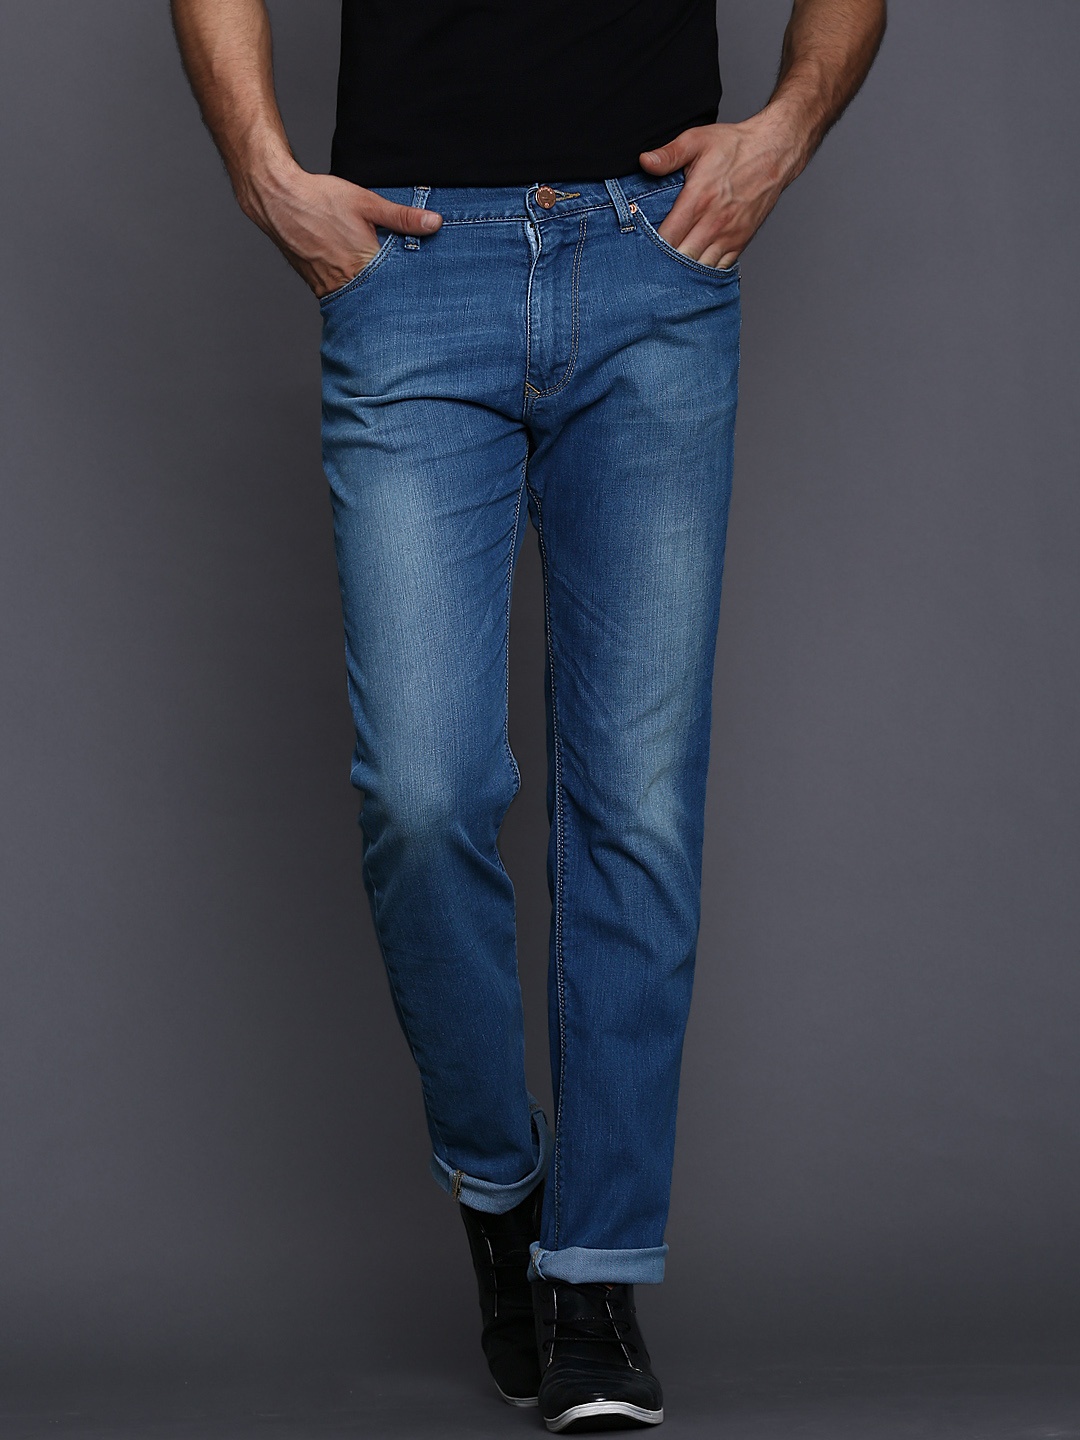 Myntra WROGN Men Blue Skinny Fit Jeans 650055 | Buy Myntra WROGN Jeans ...